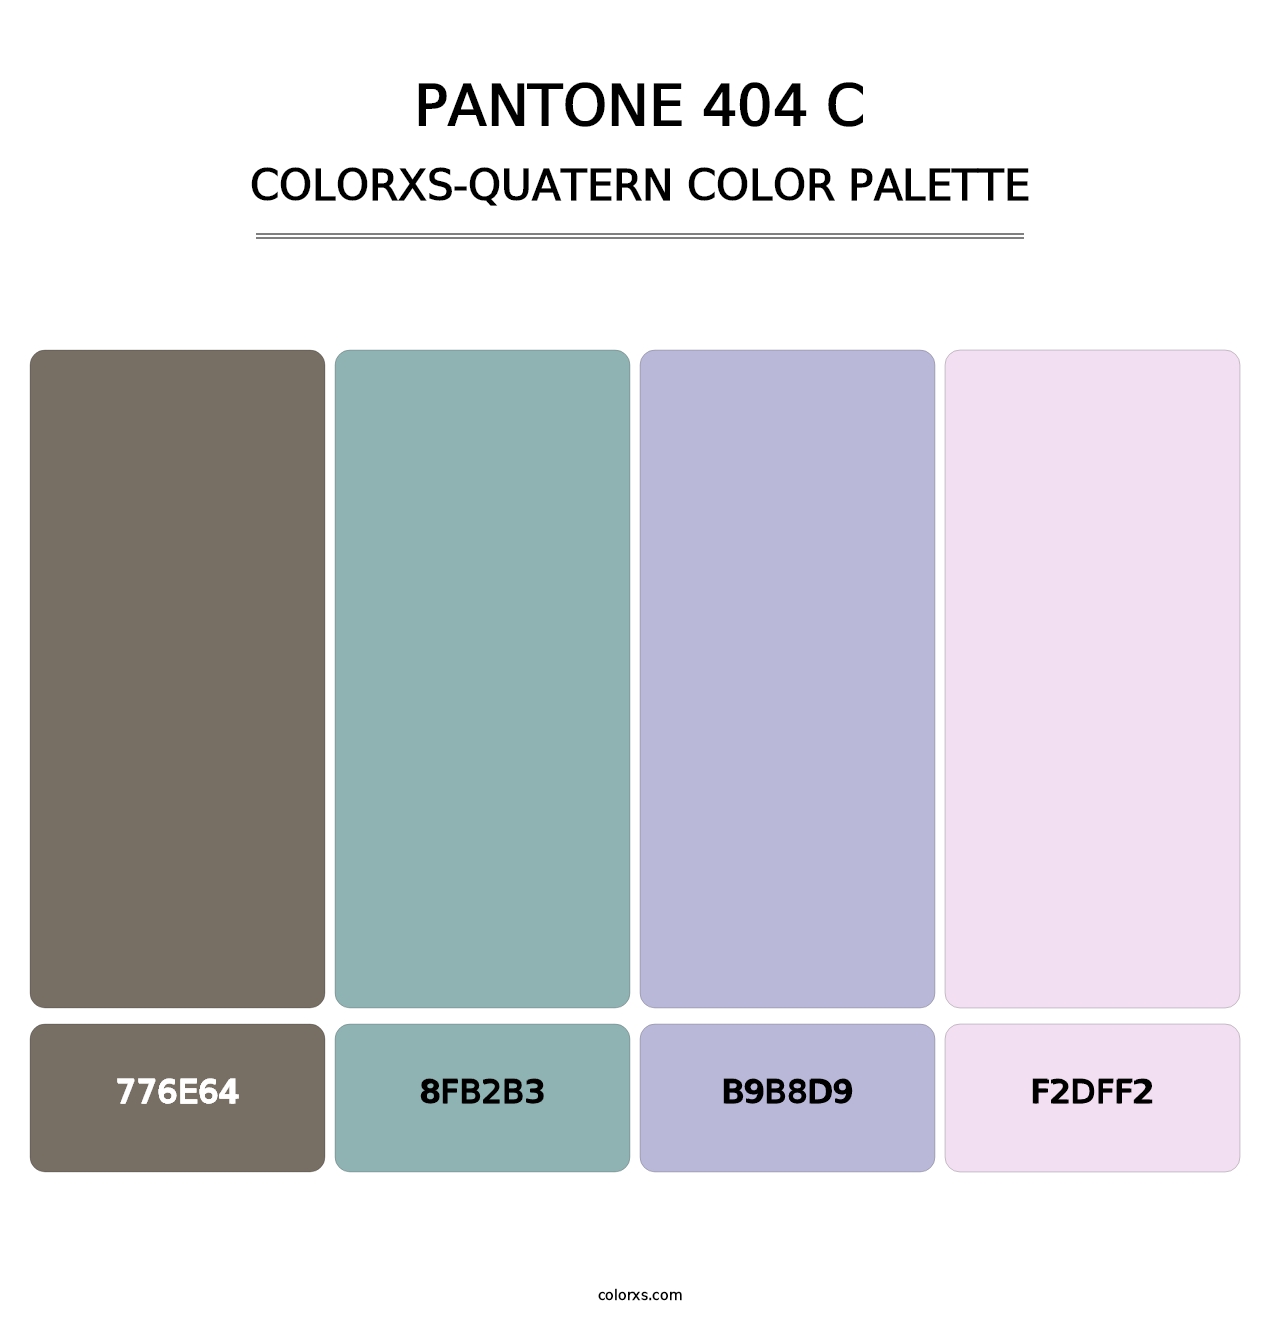 PANTONE 404 C - Colorxs Quatern Palette